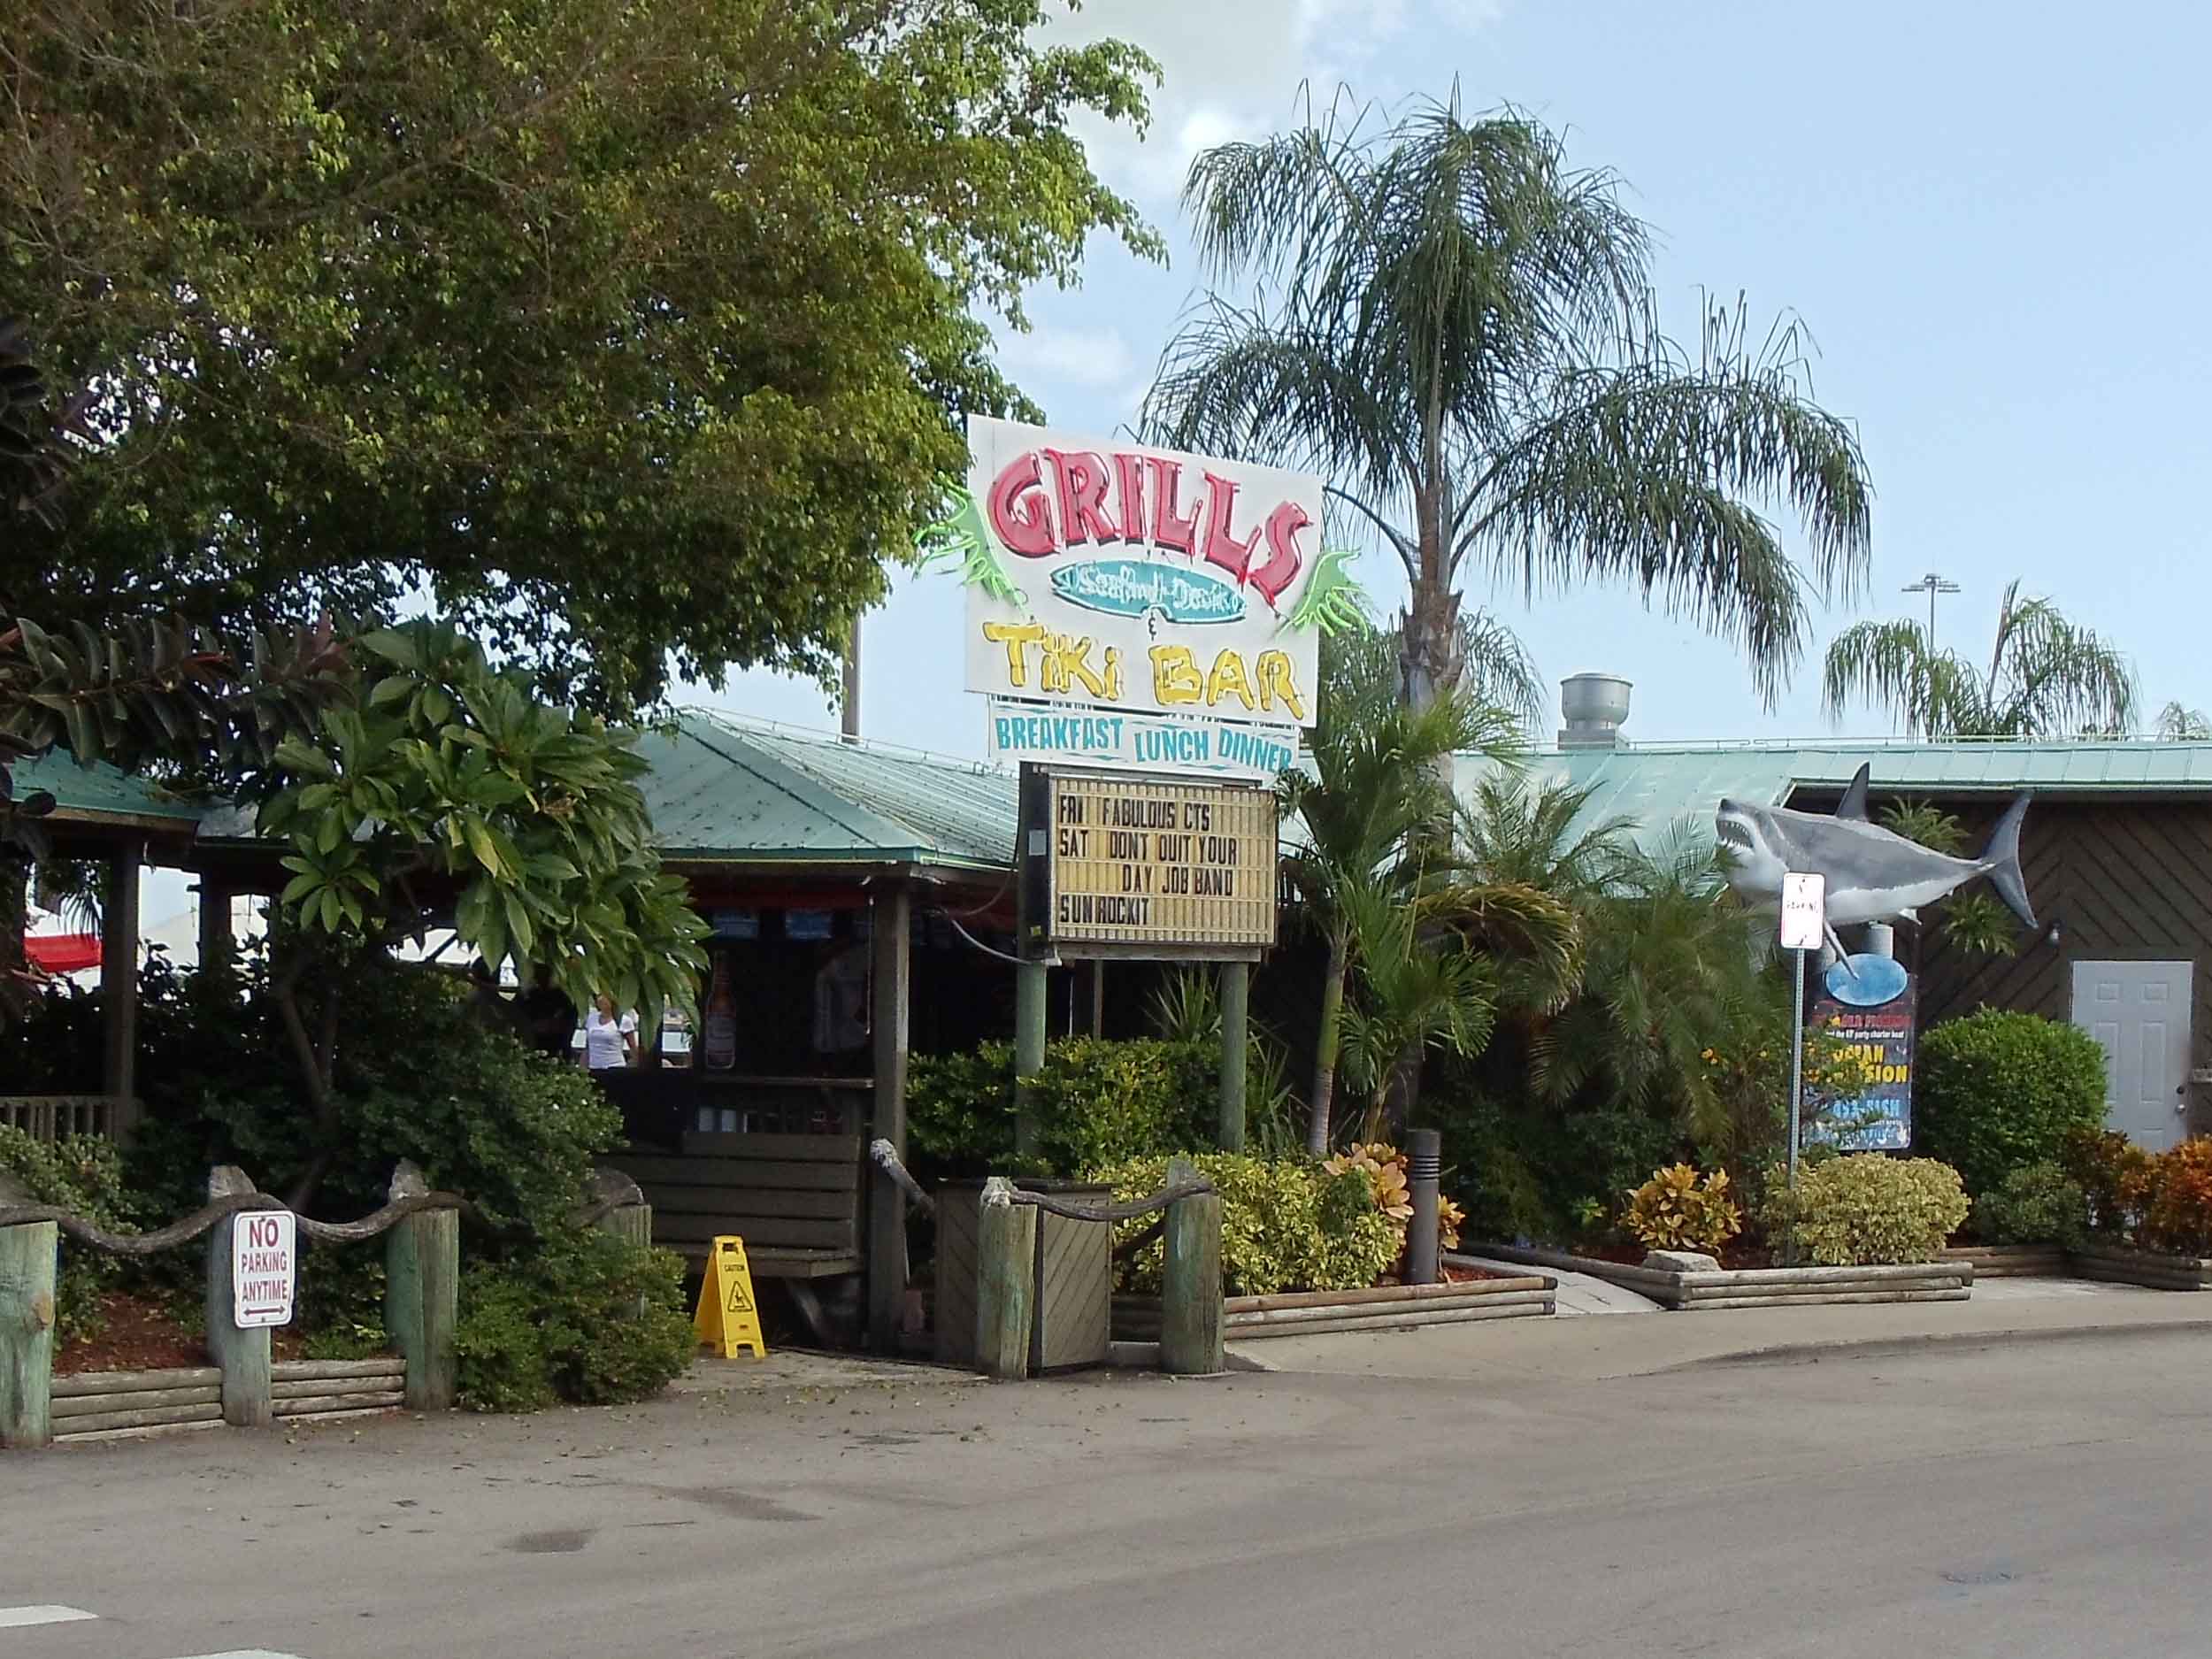 Grills Seafood Deck and Tiki Bar Entrance